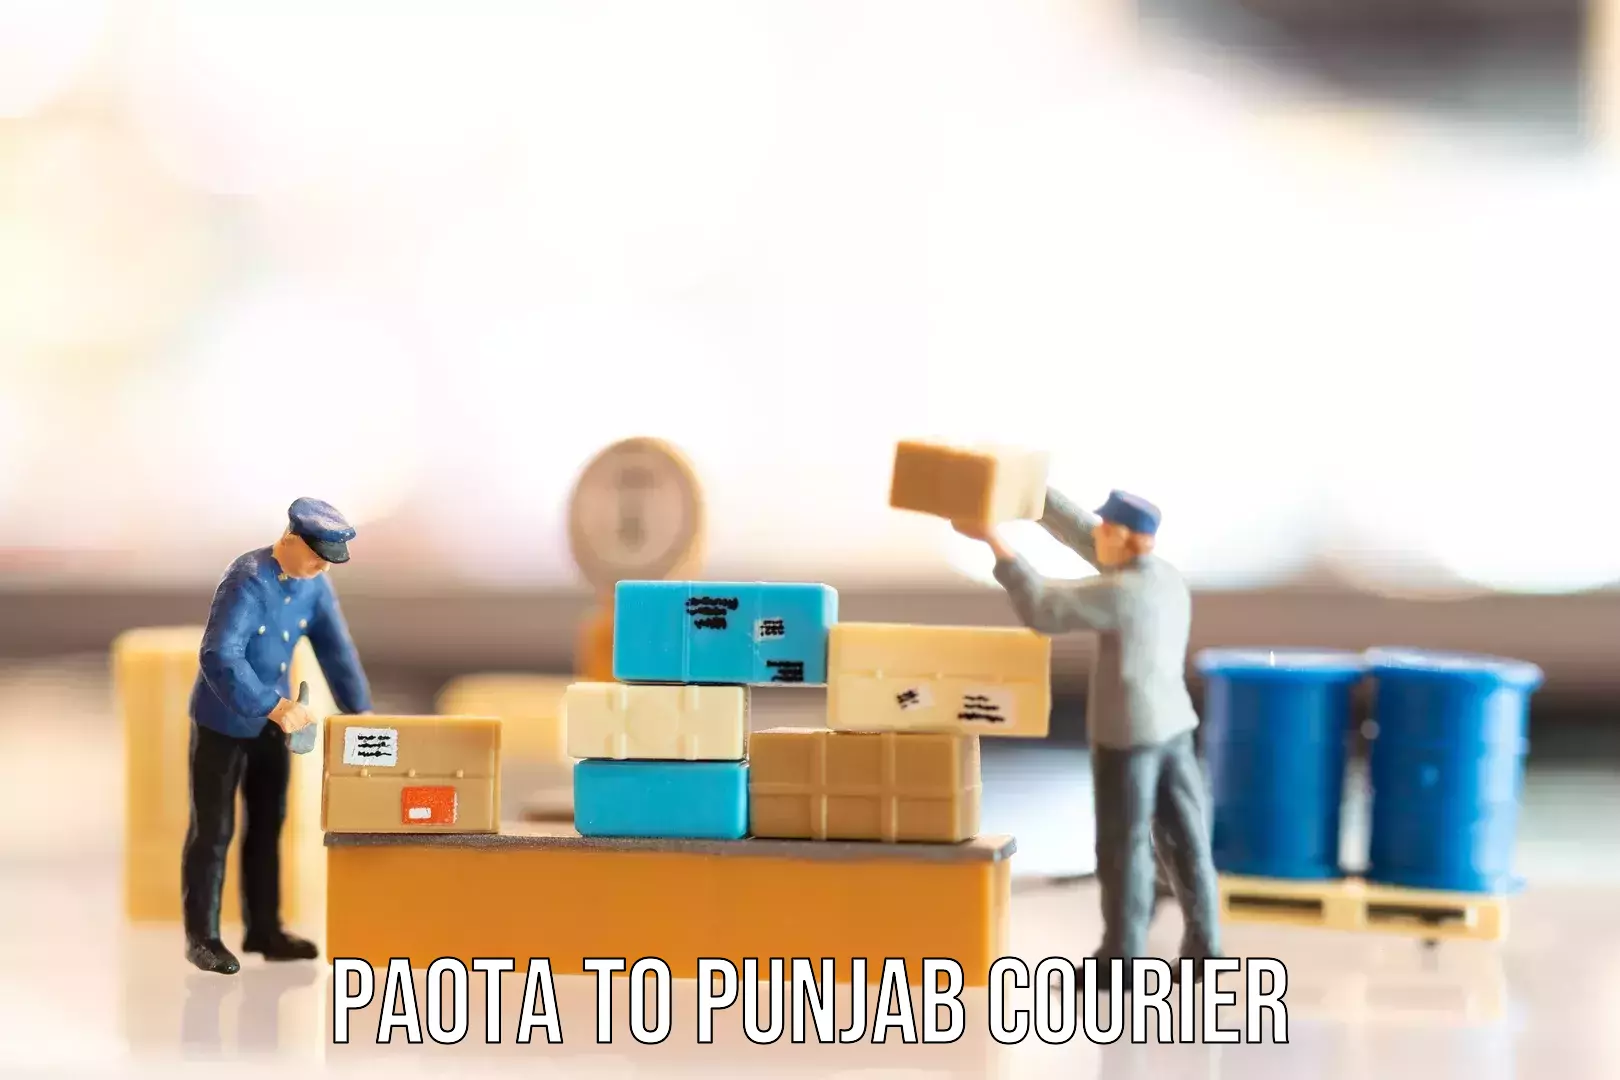 Luggage transfer service Paota to Punjab